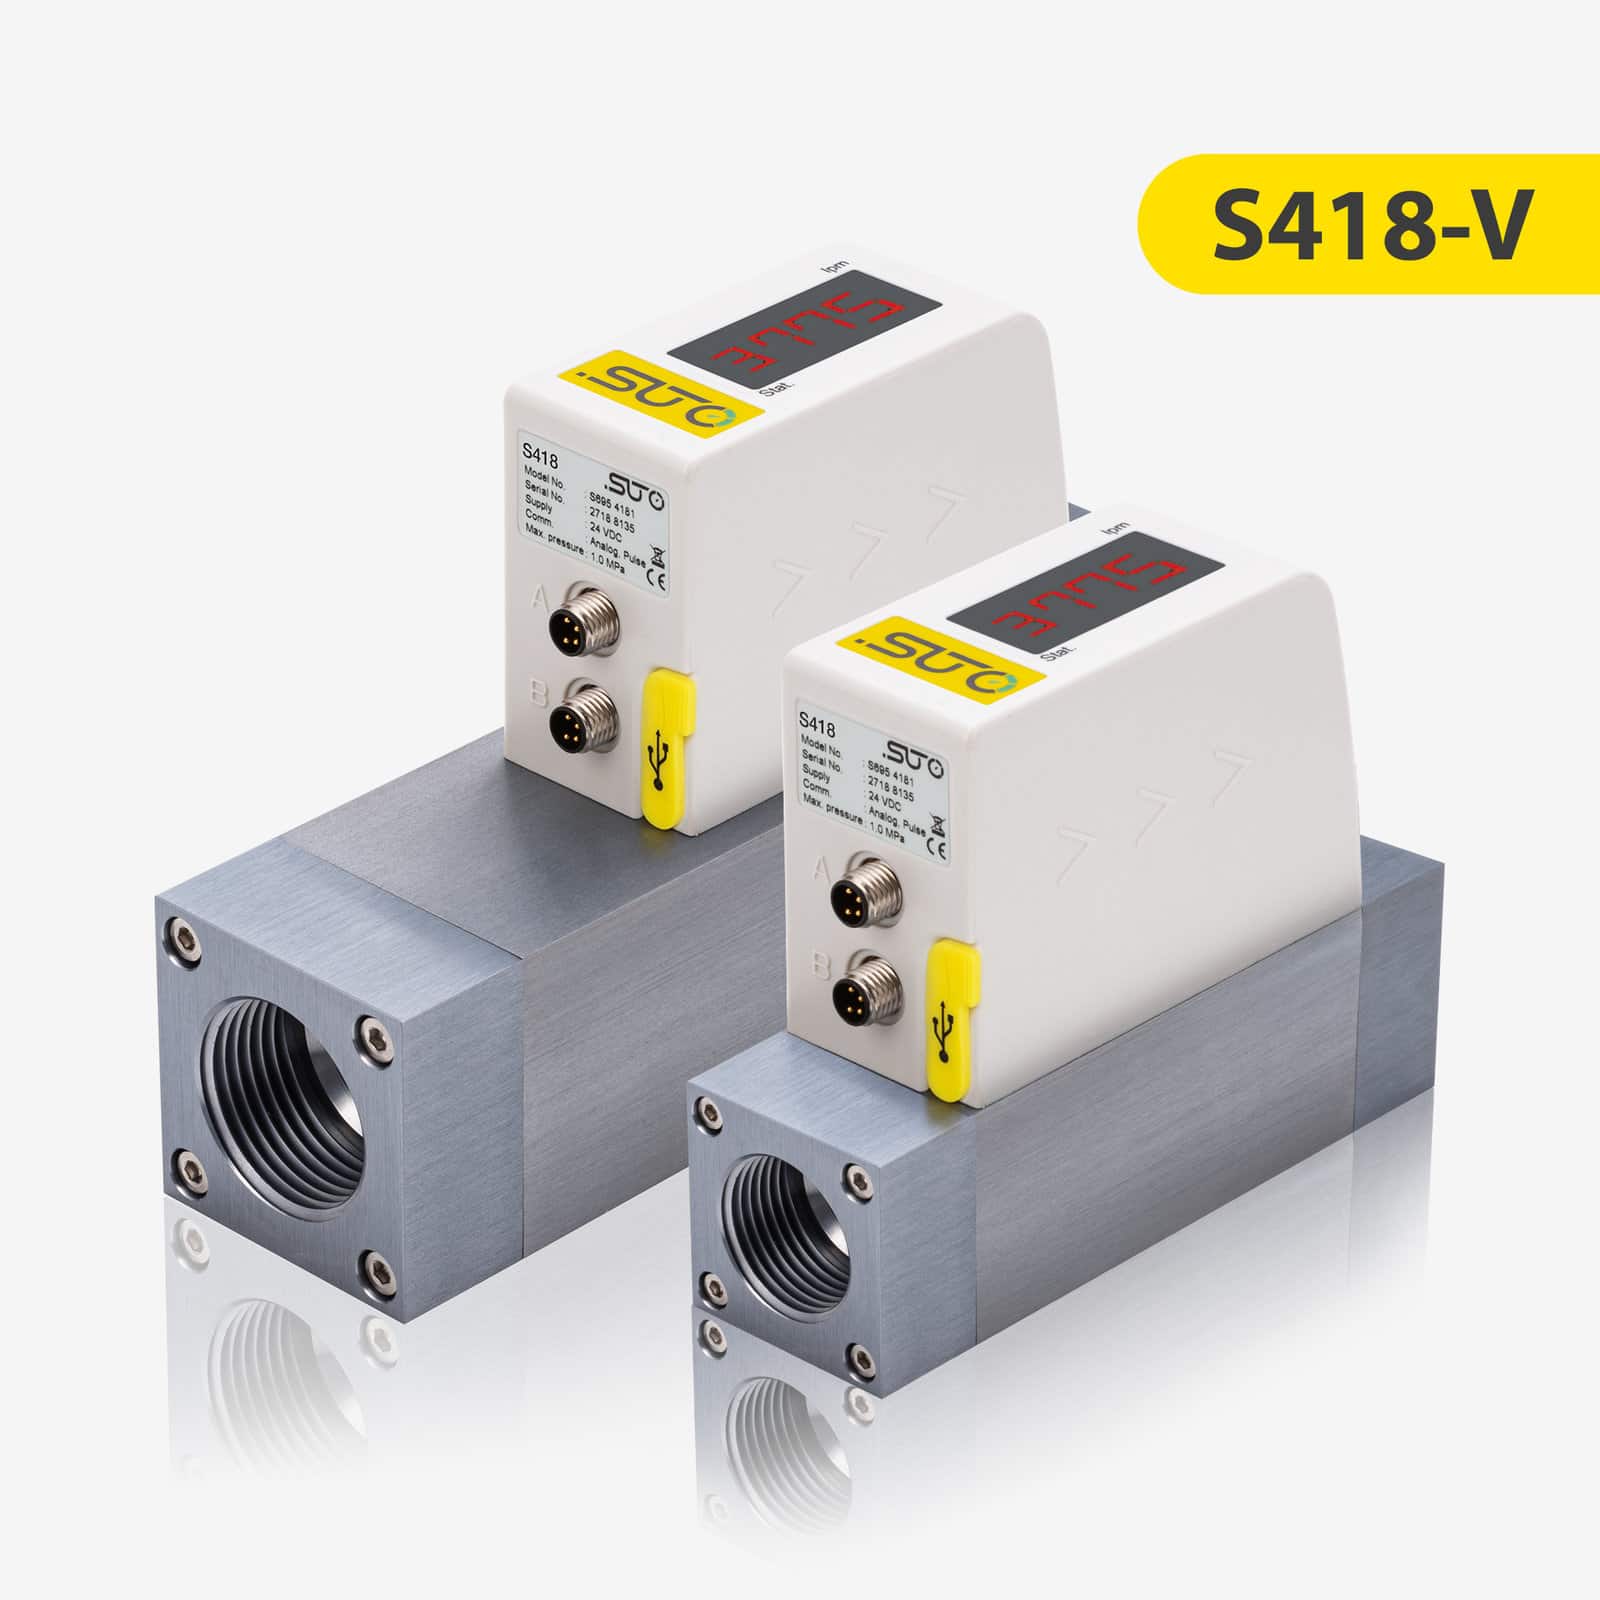 S418-V Débitmètre compact pour les applications sous vide (capteur en ligne)